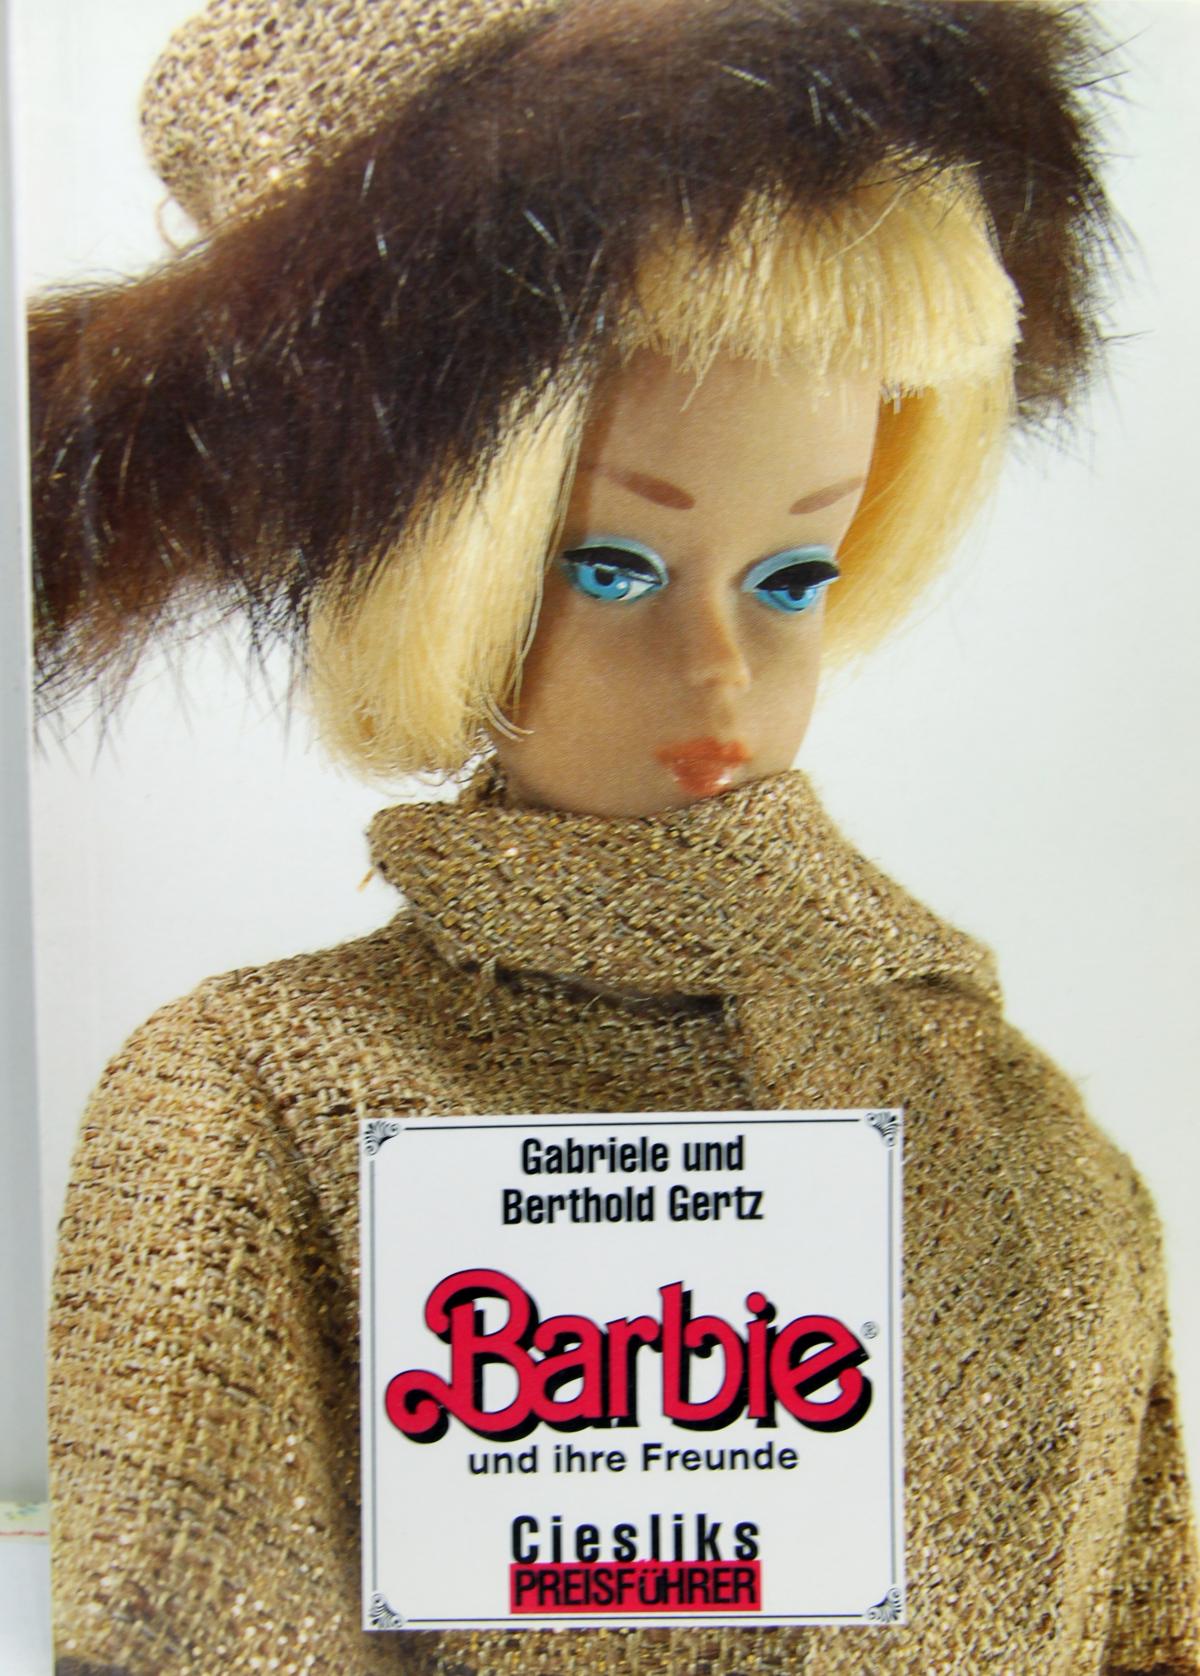 Buch "Barbie und ihre Freunde"  Gabriele und Berthold Gertz, Cieslik`s Preisführer